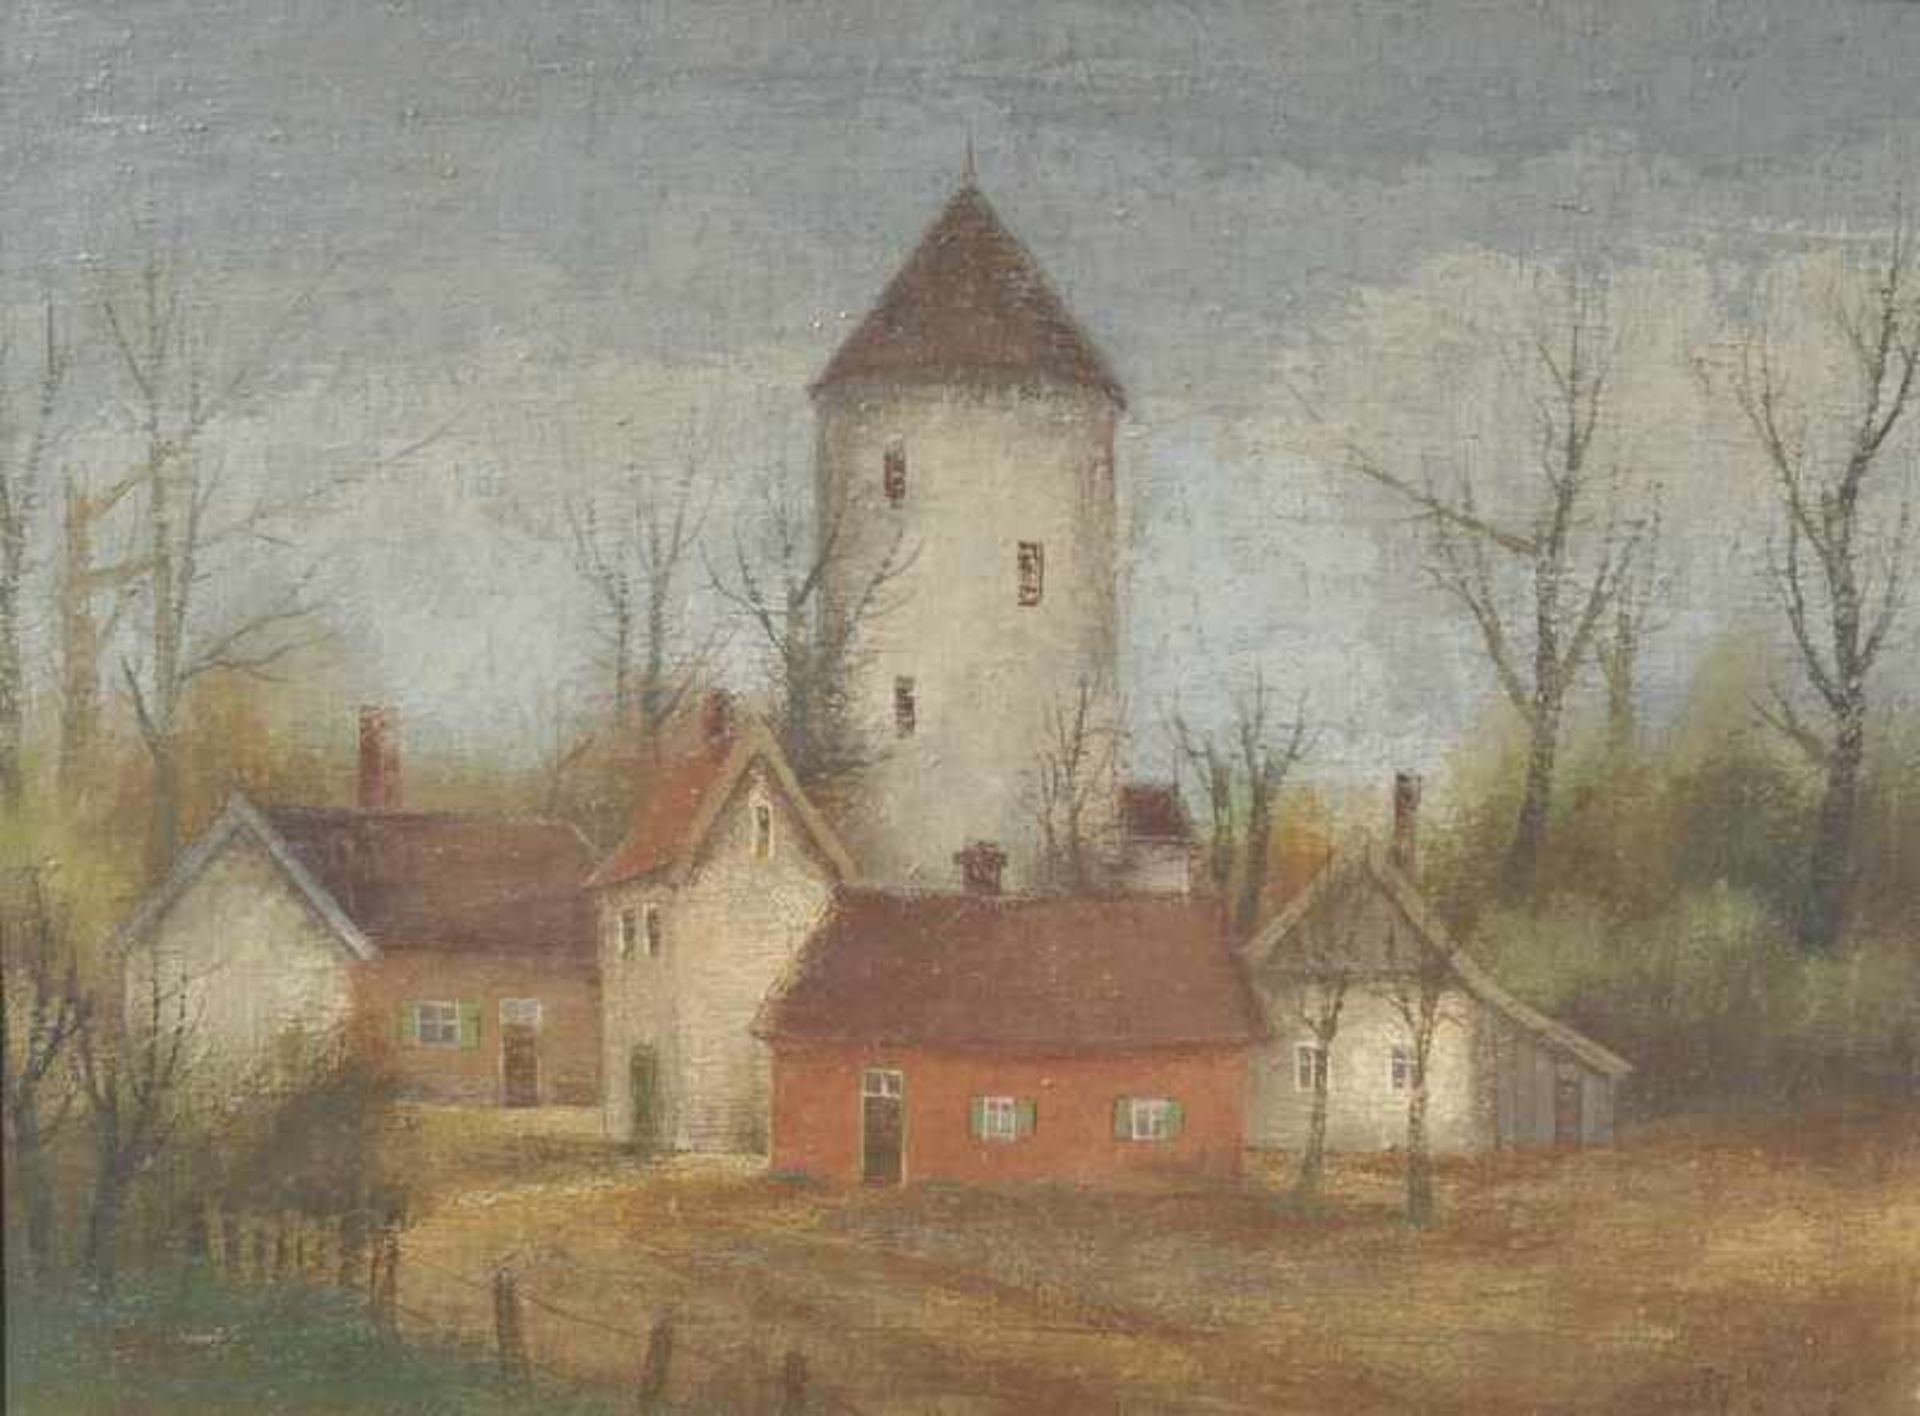 Wedewer, Josef (1896 Lüdinghausen-1979 Ebenda): "Der Wehrturm" Münster, 1943 Grundlage für diese